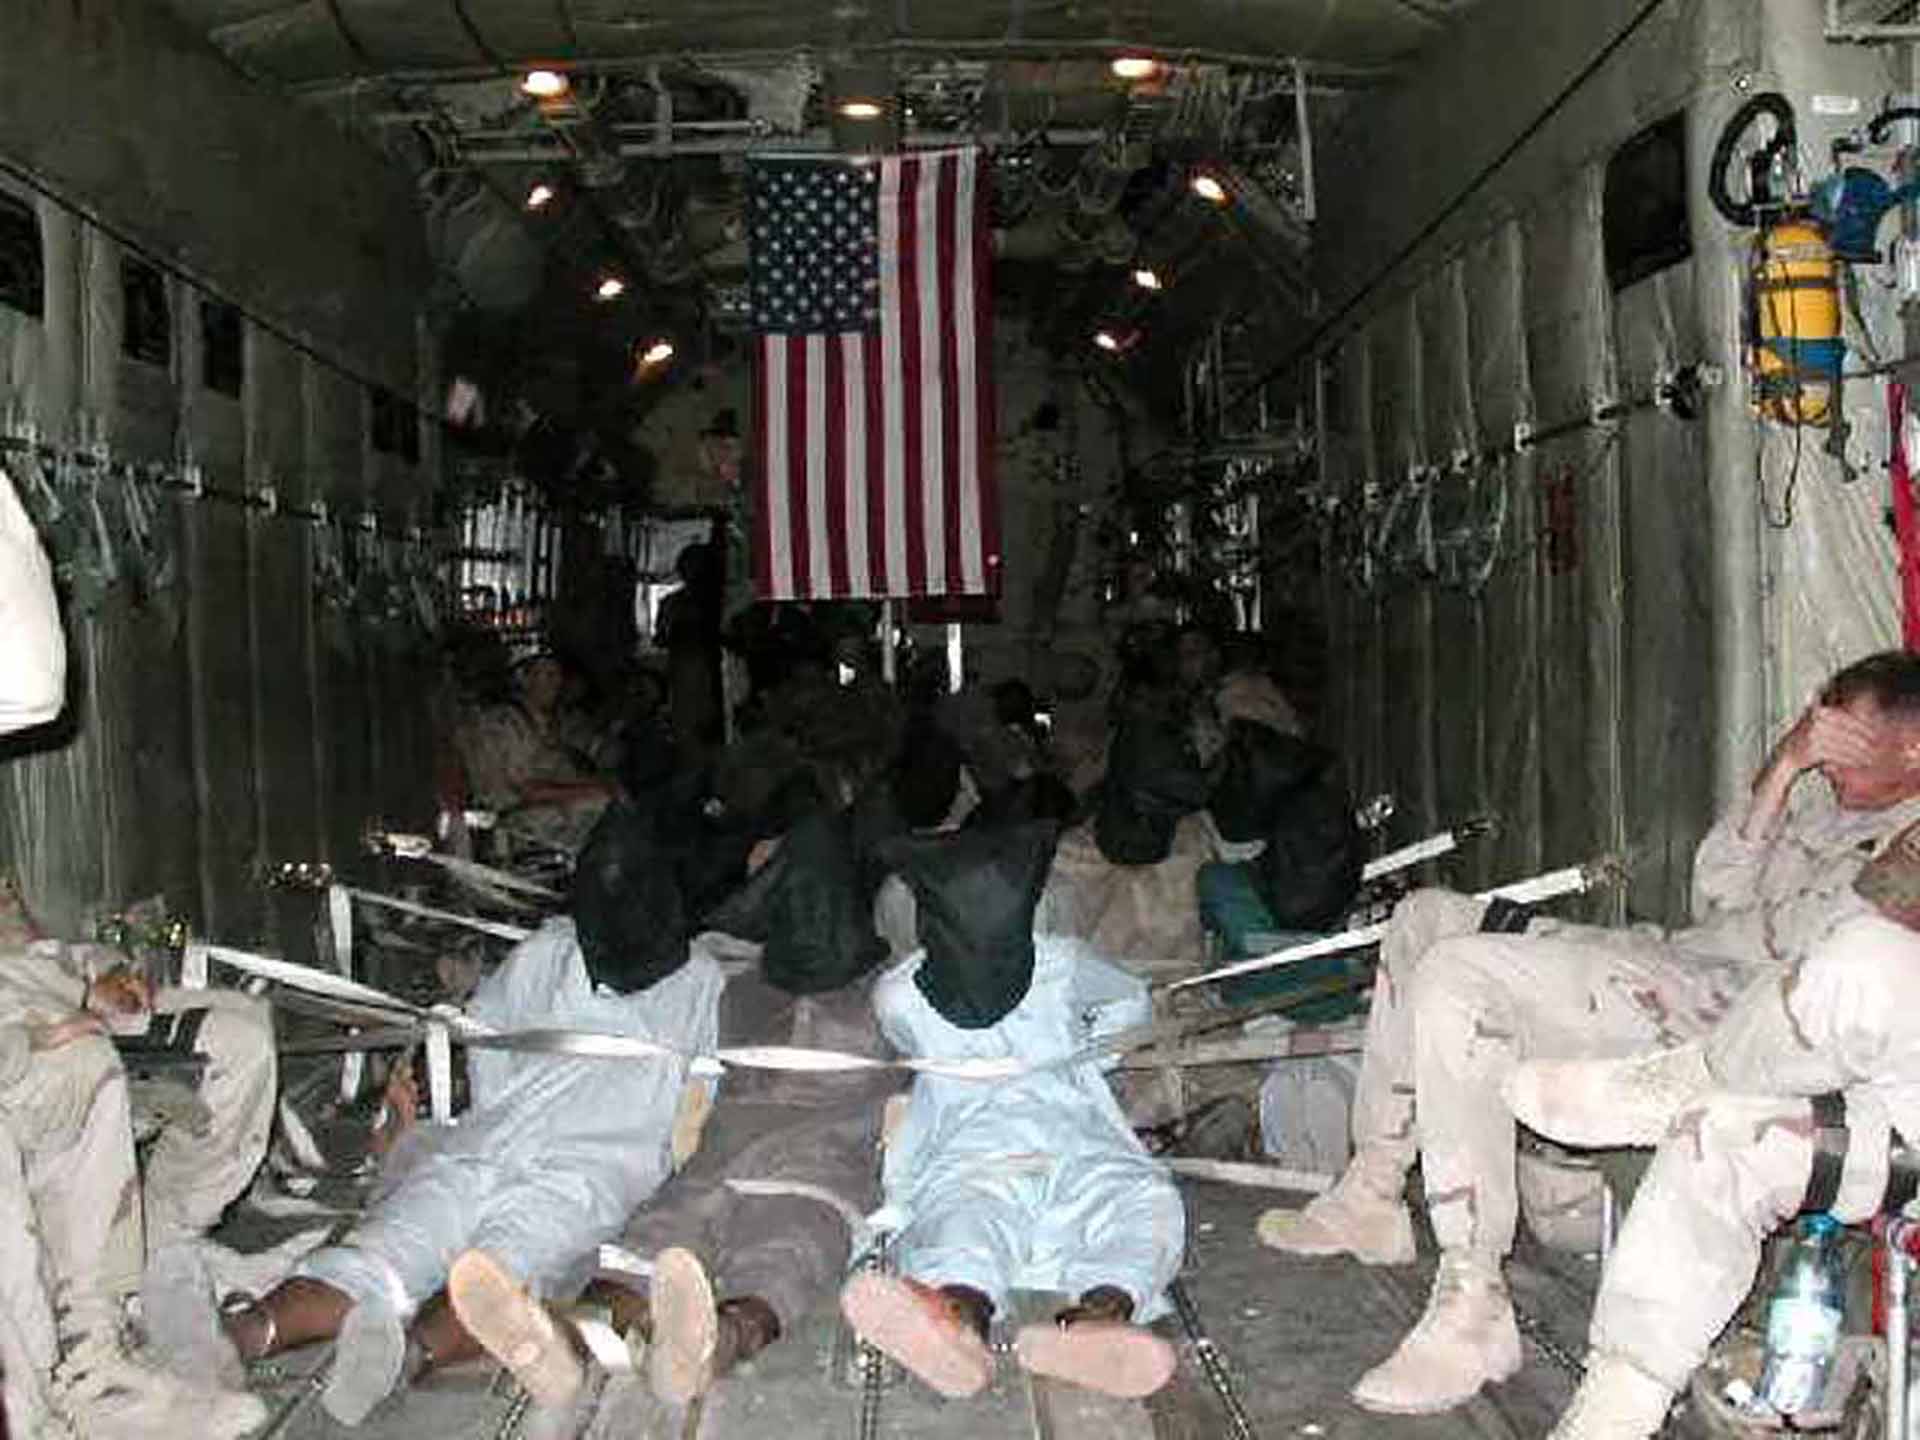 Esta foto publicada a AFP el 8 de noviembre de 2002 y enviada por correo electrónico de forma anónima a varias organizaciones de noticias, según los informes, muestra detenidos inmovilizados a bordo de un transporte militar estadounidense. (AFP)